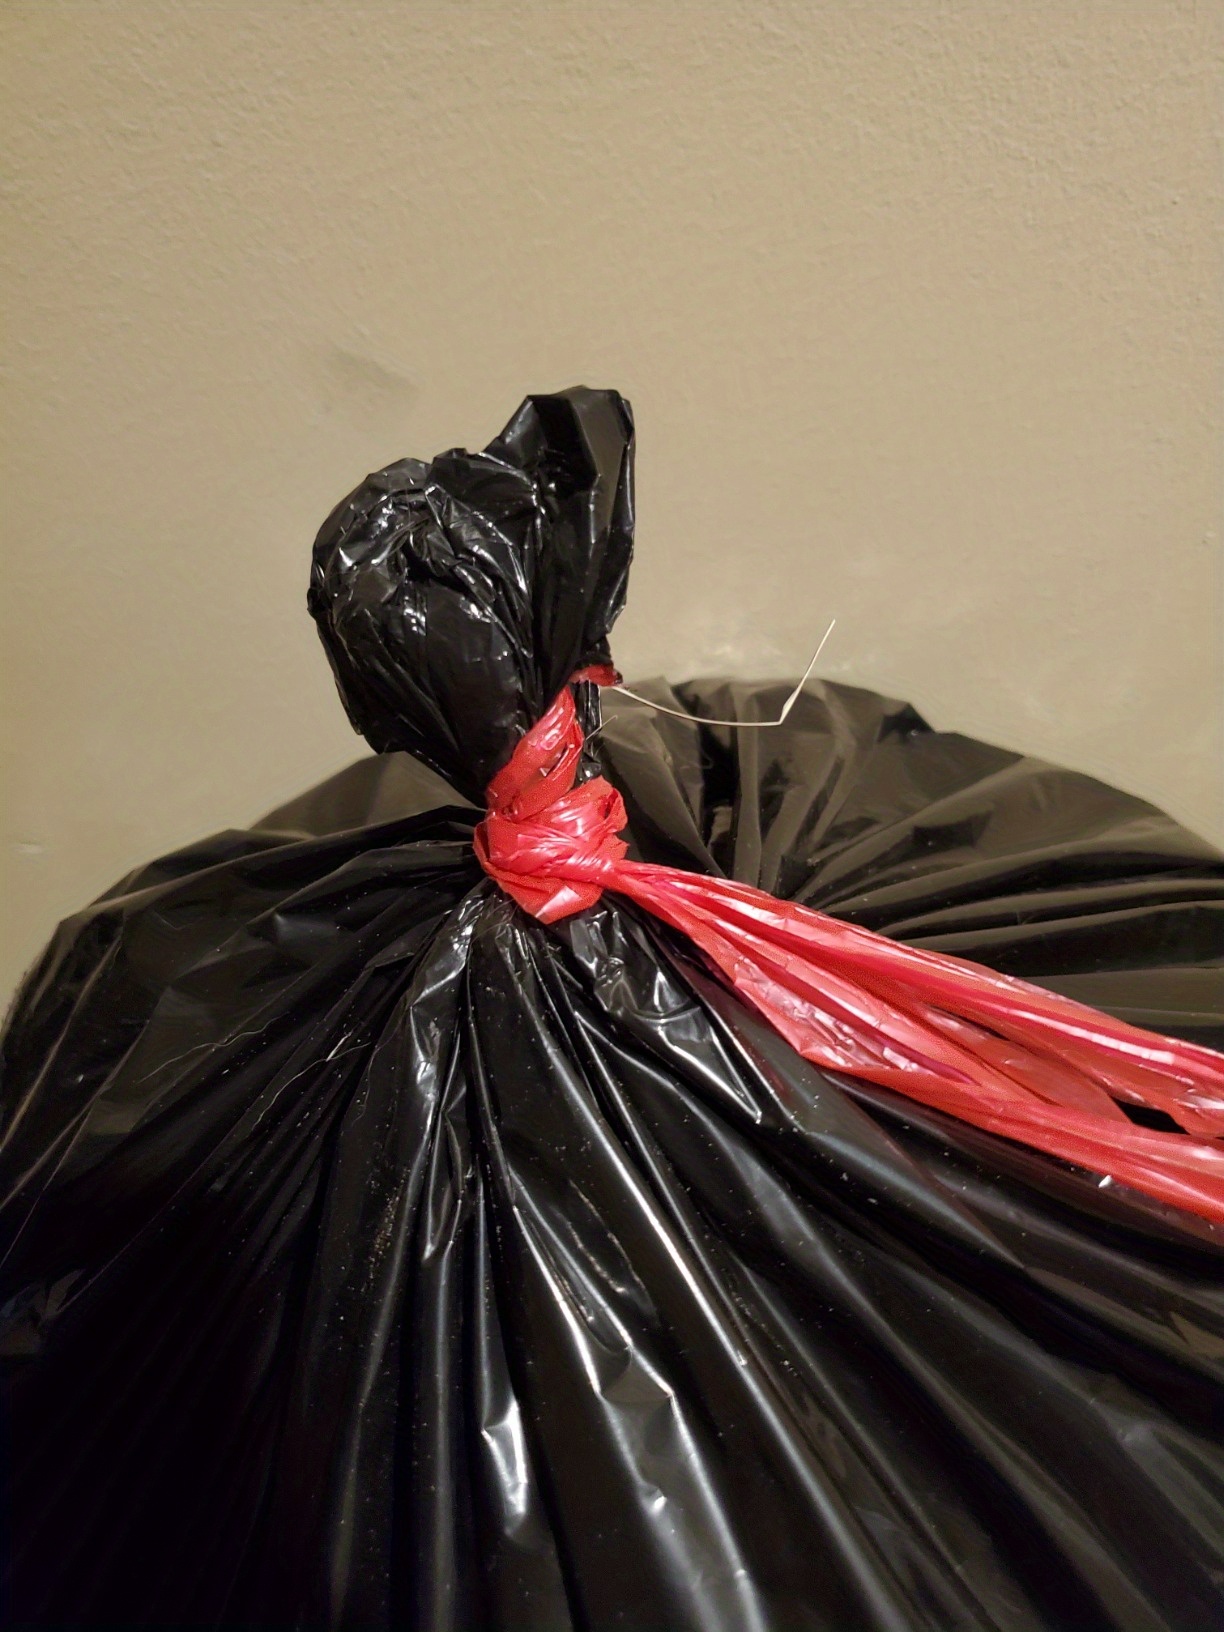 Bolsas de basura negras: 33 y 30 galones